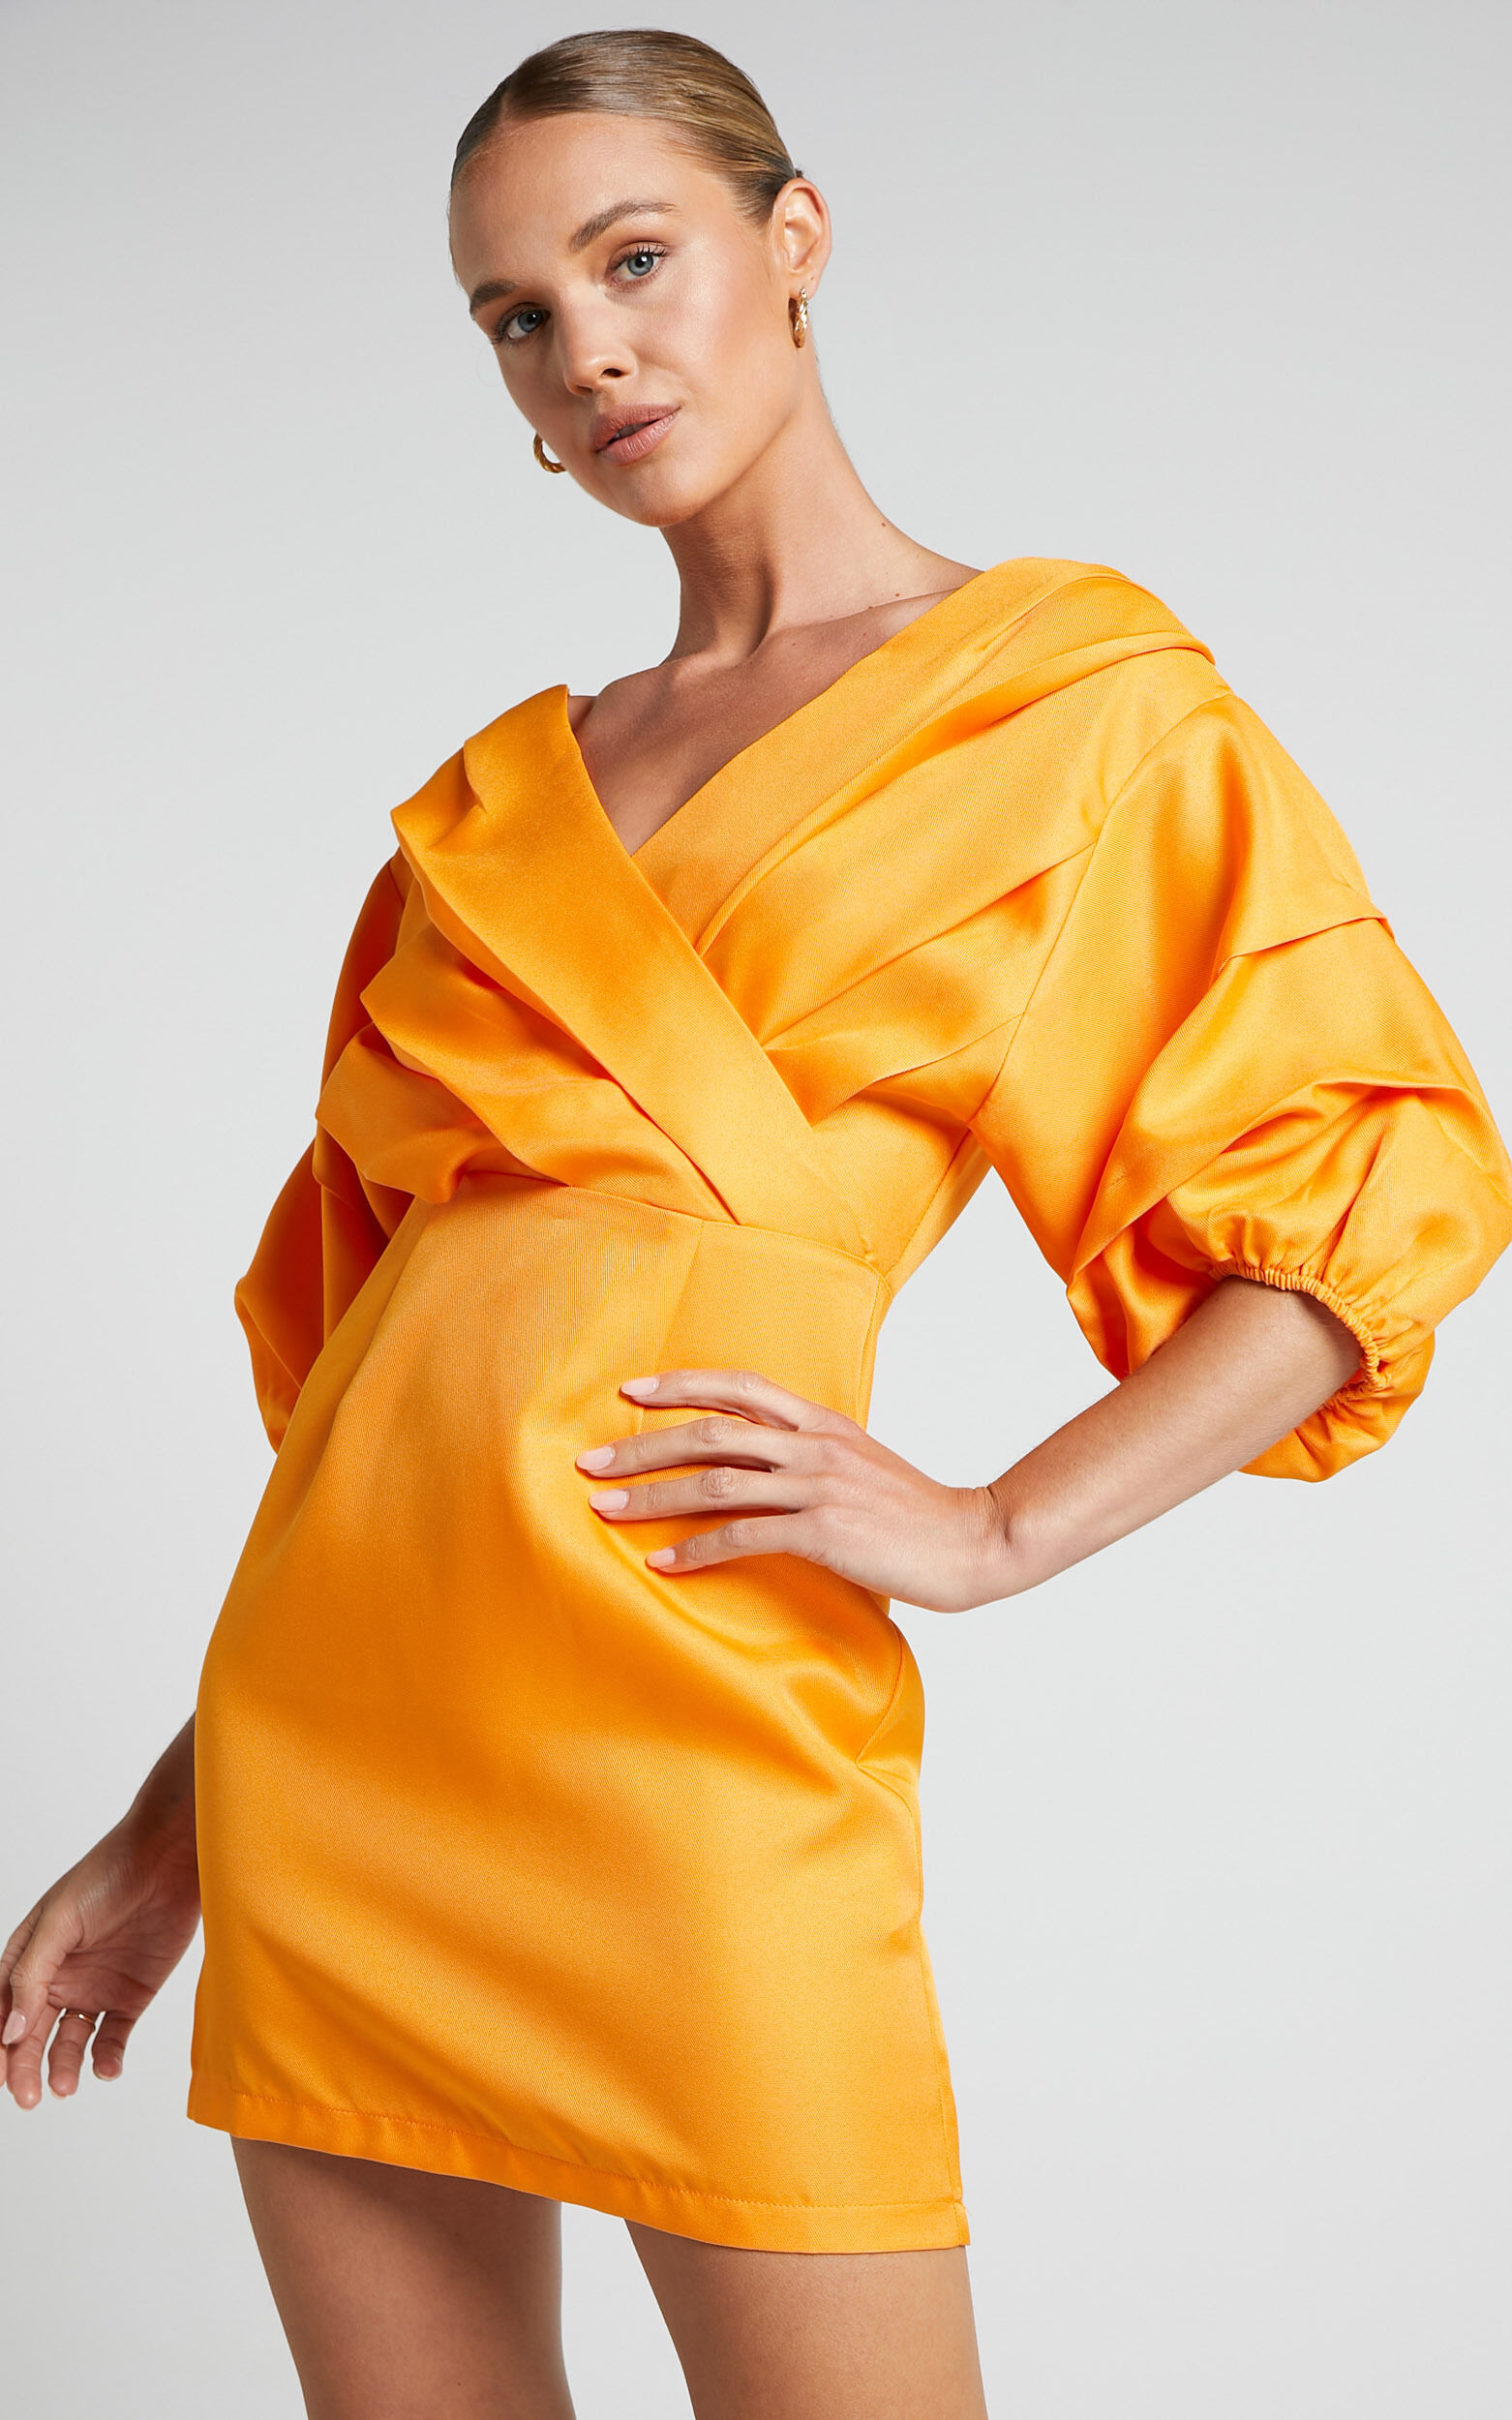 Anastasija Mini Dress - Off Shoulder V Neck Dress in Mango - 06, ORG1, super-hi-res image number null